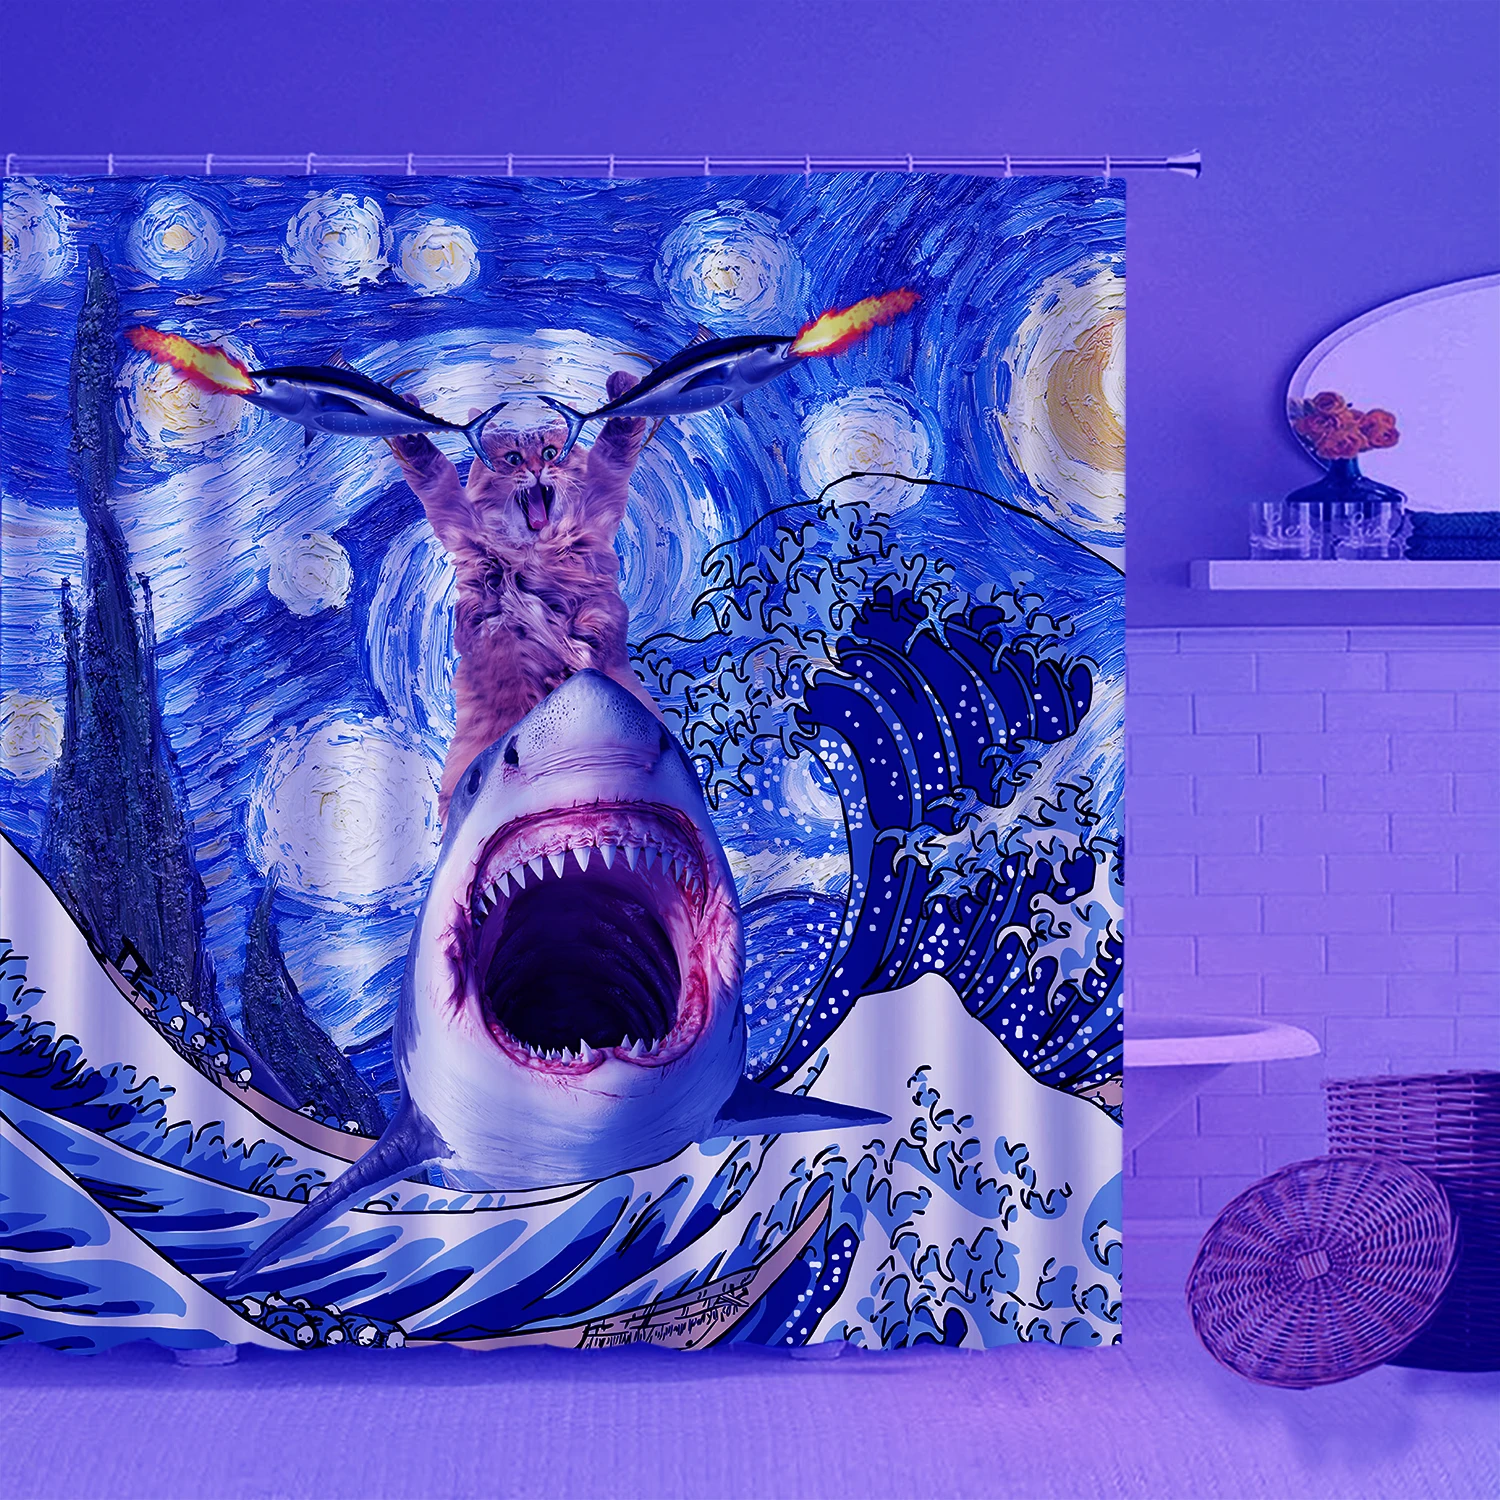 

штора для ванной ткань штора для ванной Флуоресцентная забавная занавеска для душа в форме кошки, крутой УФ динозавр, аксессуары для комнаты, волнистые декоративные тканевые занавески для ванной комнаты